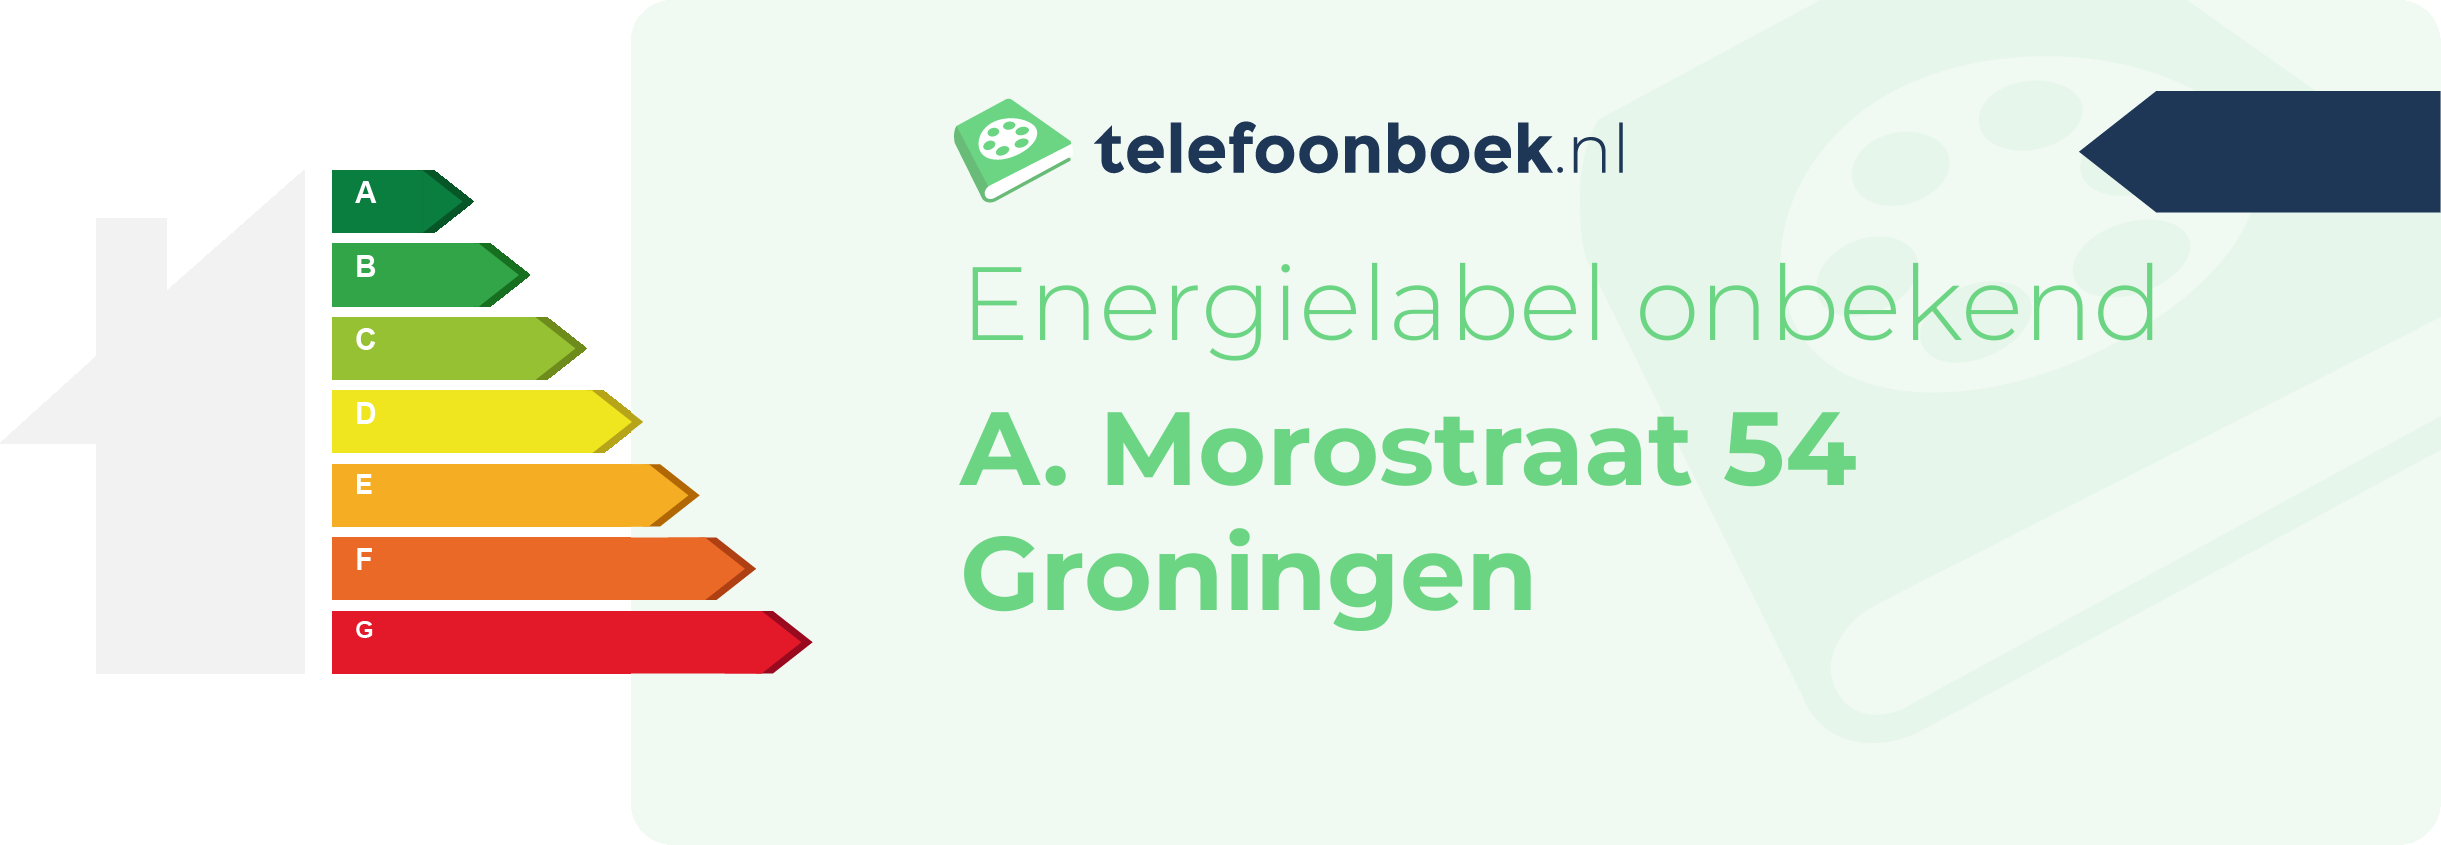 Energielabel A. Morostraat 54 Groningen